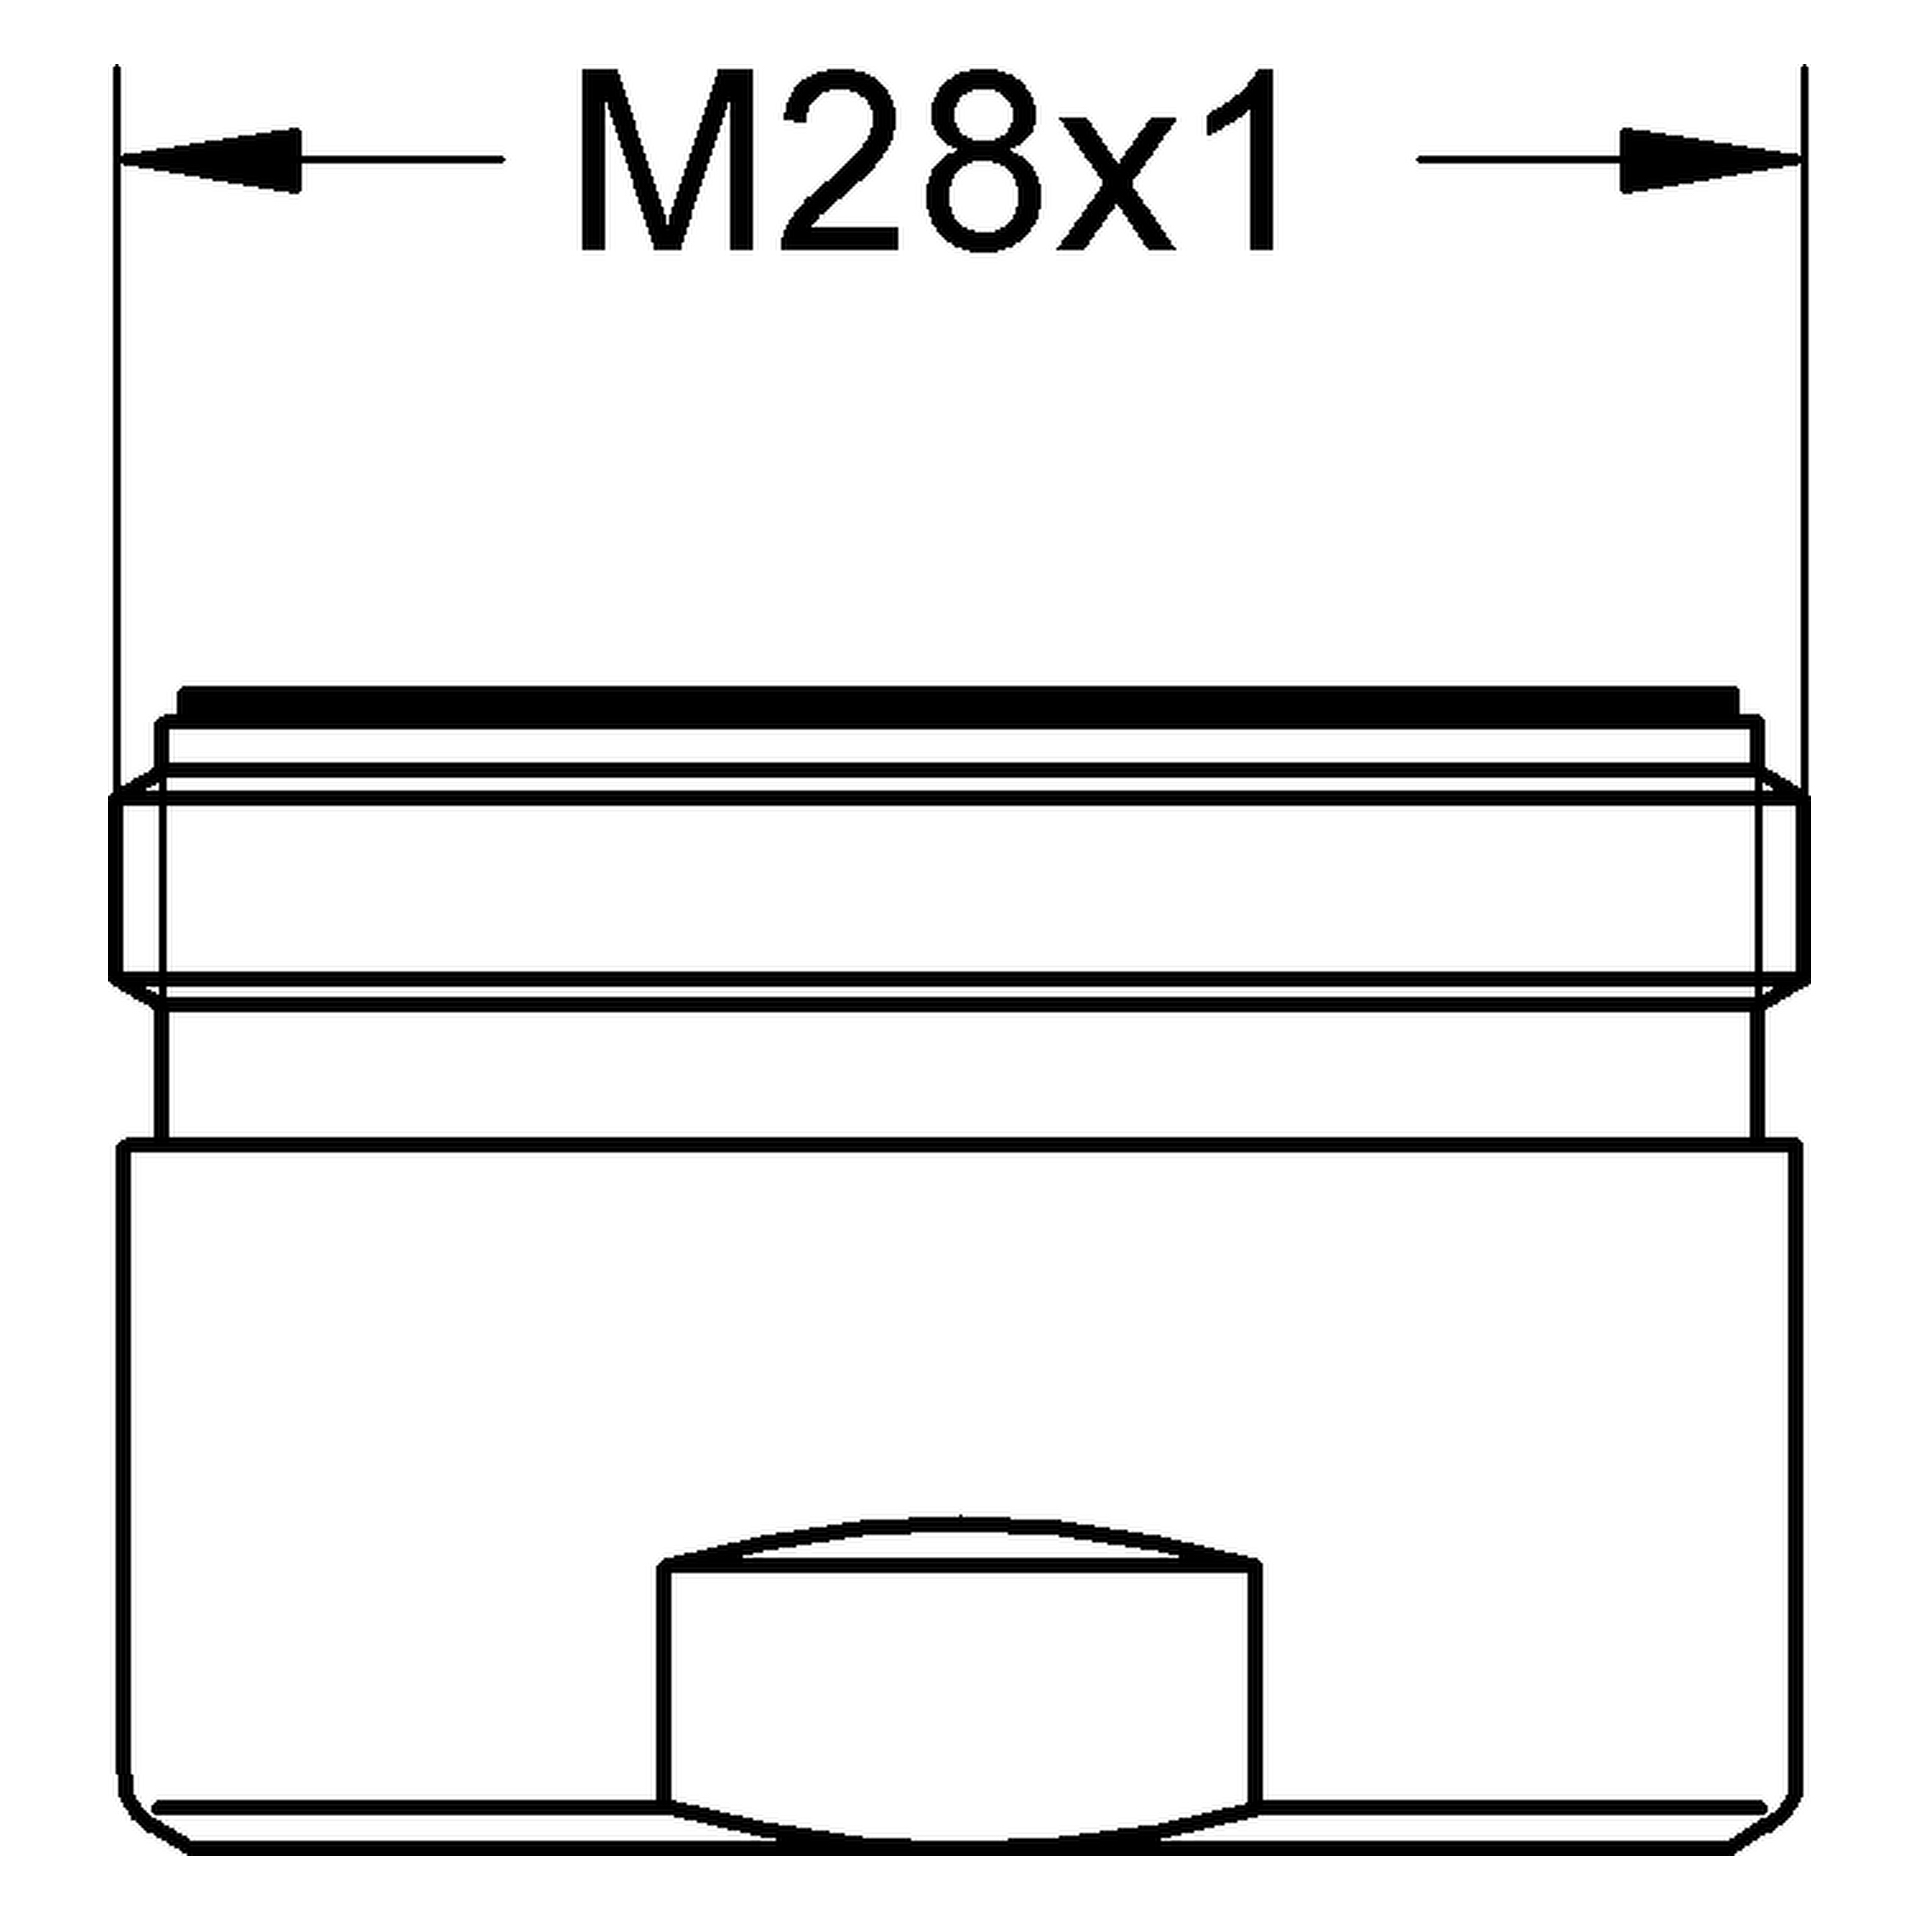 Sistra 13907, Außengewinde, M 28 × 1, Durchflussklasse M, 60,0 - 70,0 l/min bei 3 bar, chrom